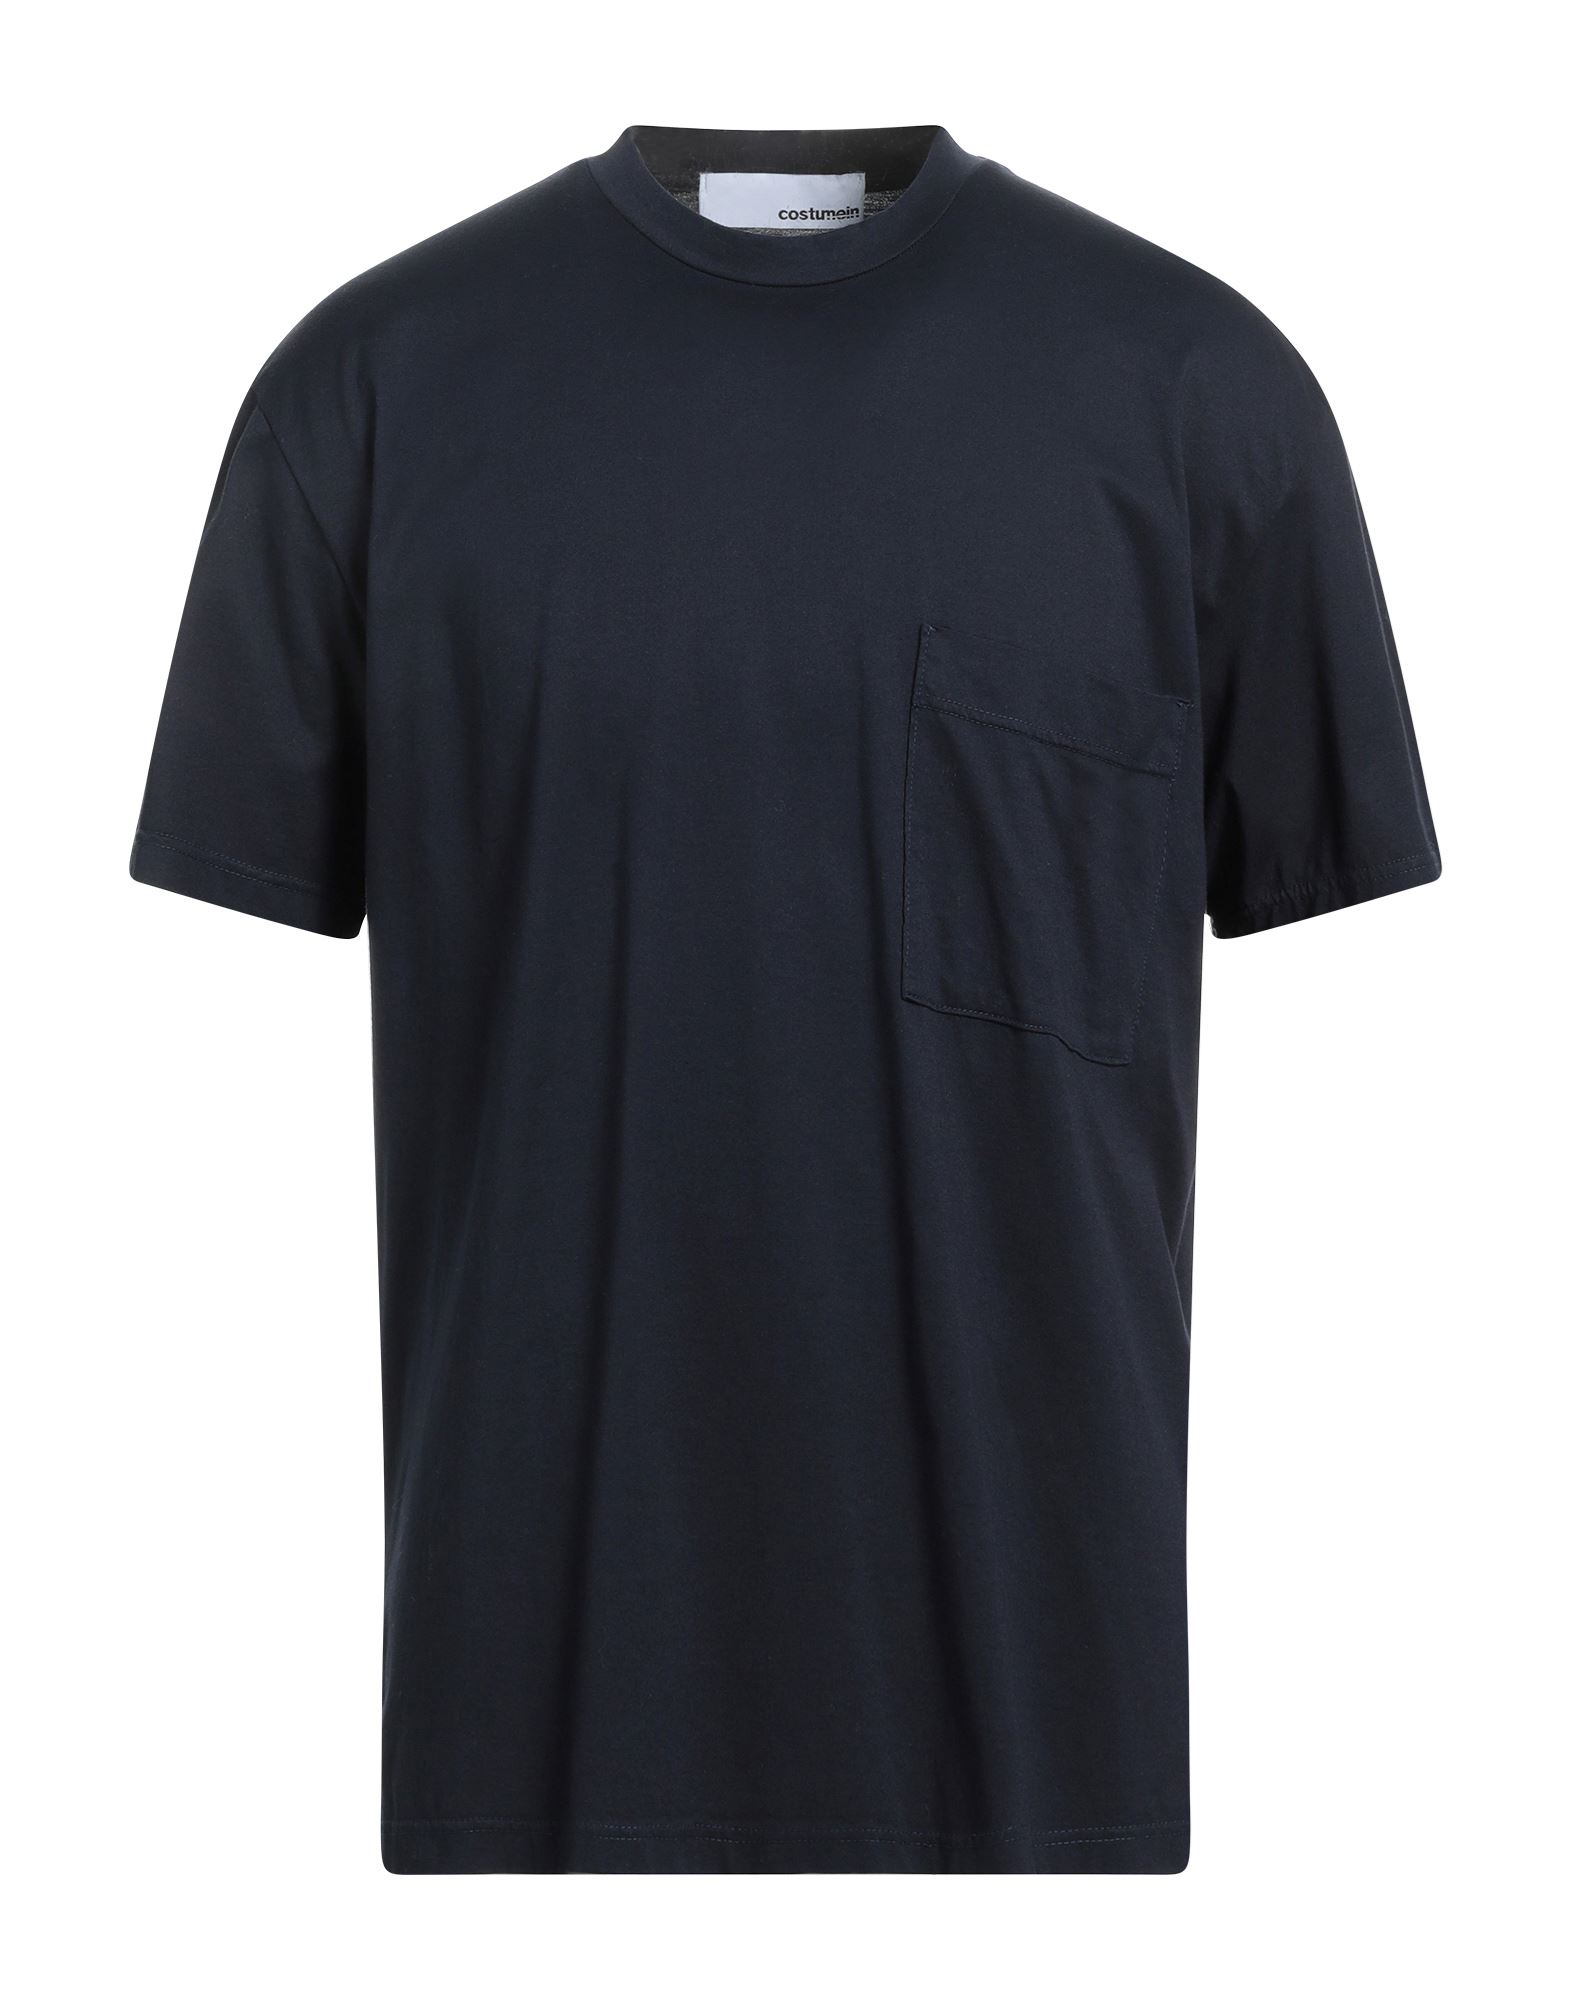 COSTUMEIN T-shirts Herren Nachtblau von COSTUMEIN